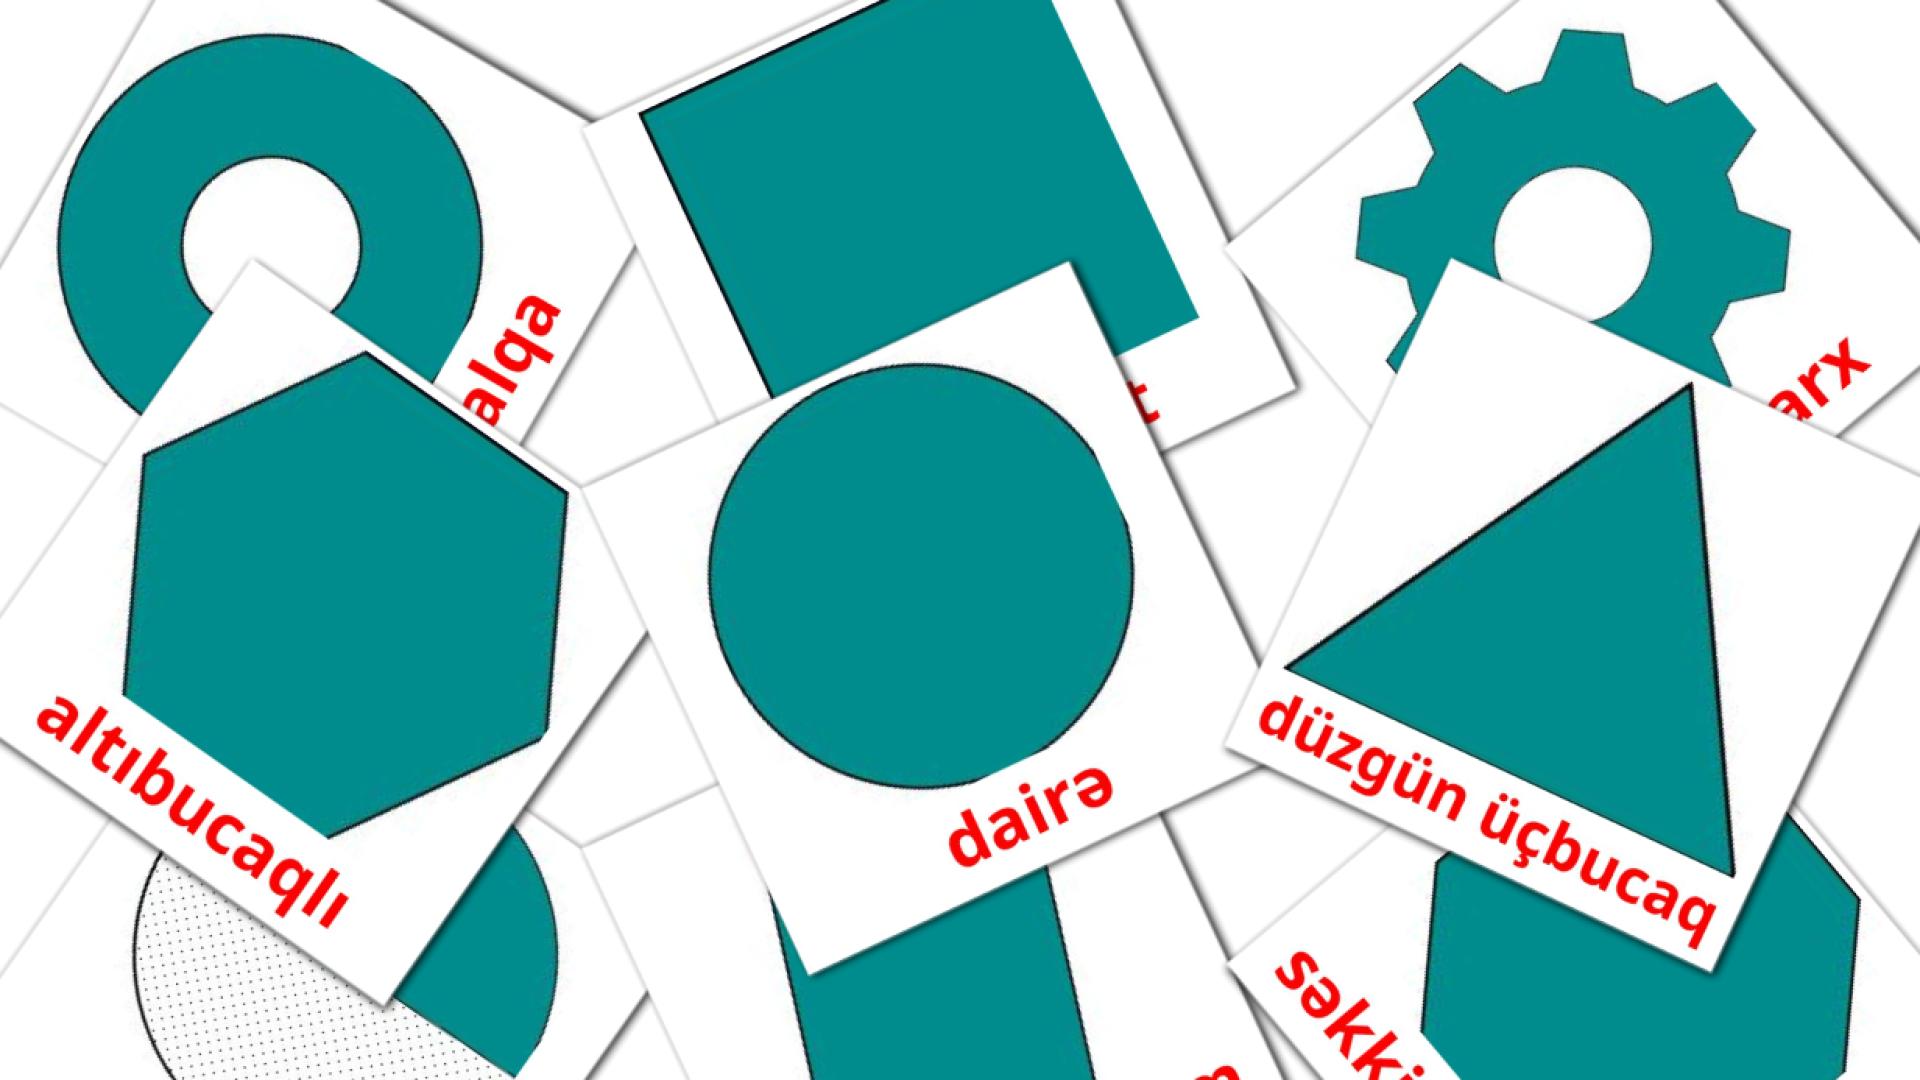 2D Shapes - azerbaijani vocabulary cards